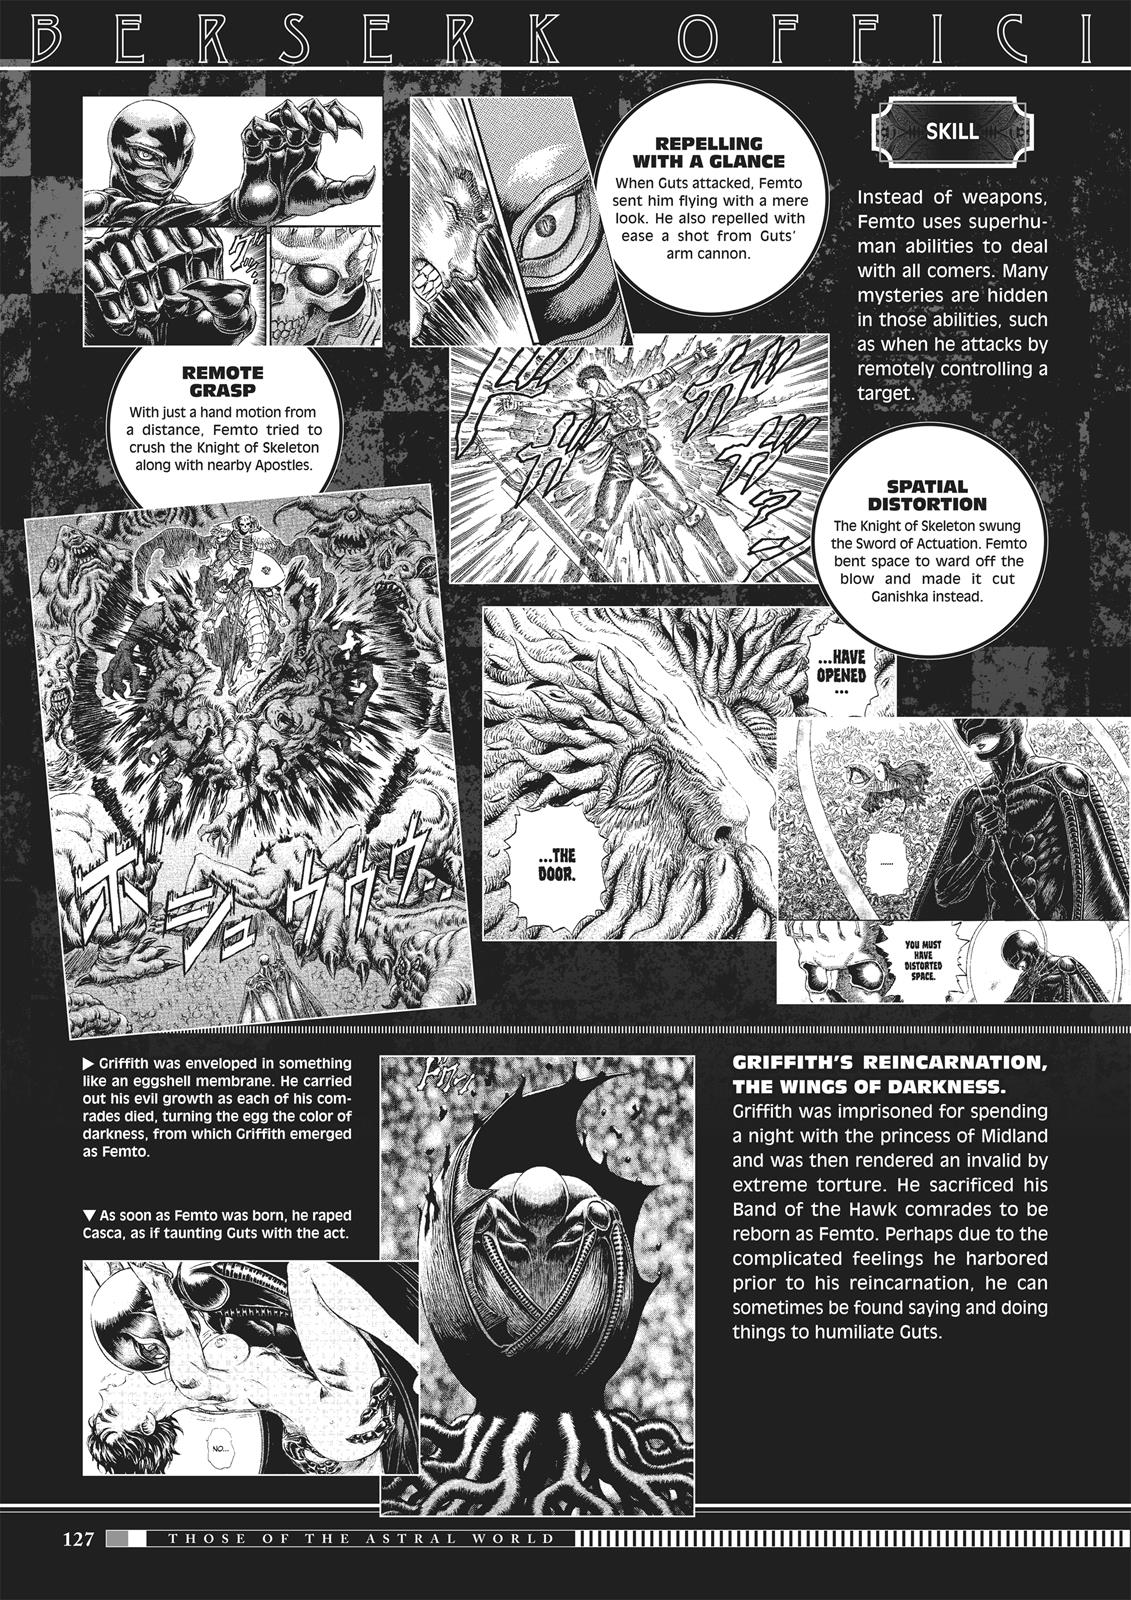 Berserk Manga Chapter 350.5 image 125